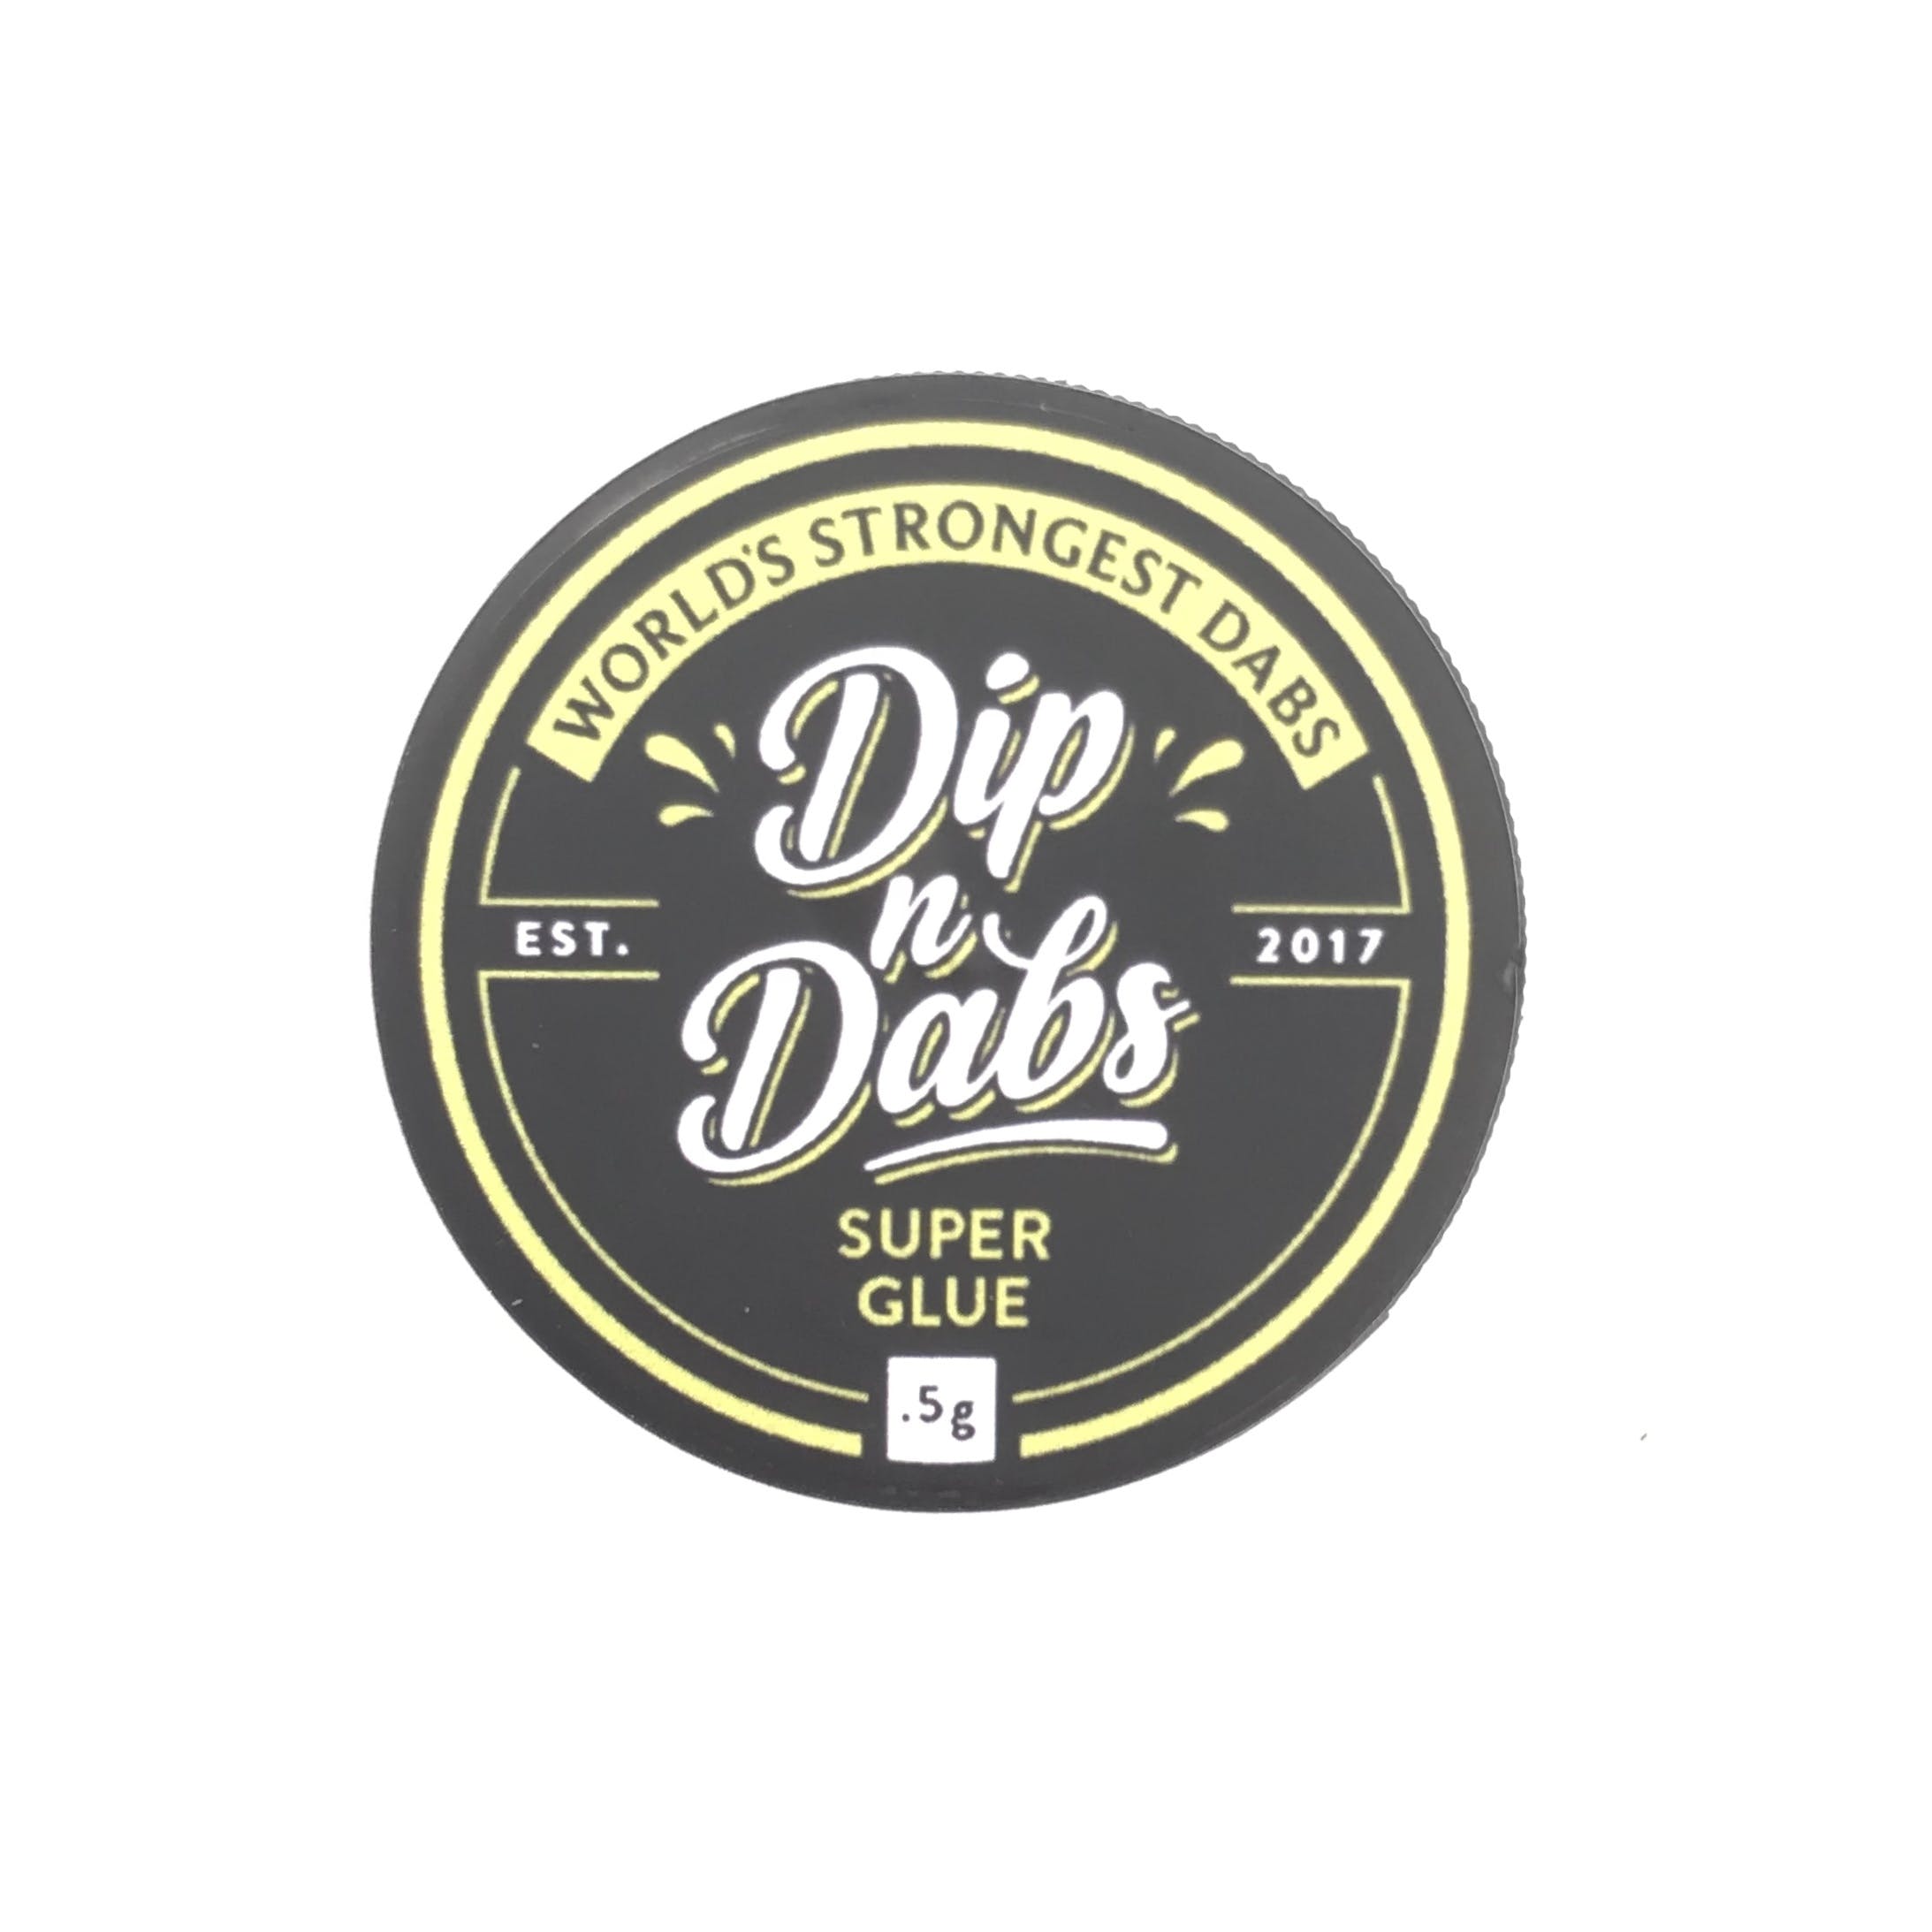 [Isolate] 500mg Super Glue - Dip n Dabs